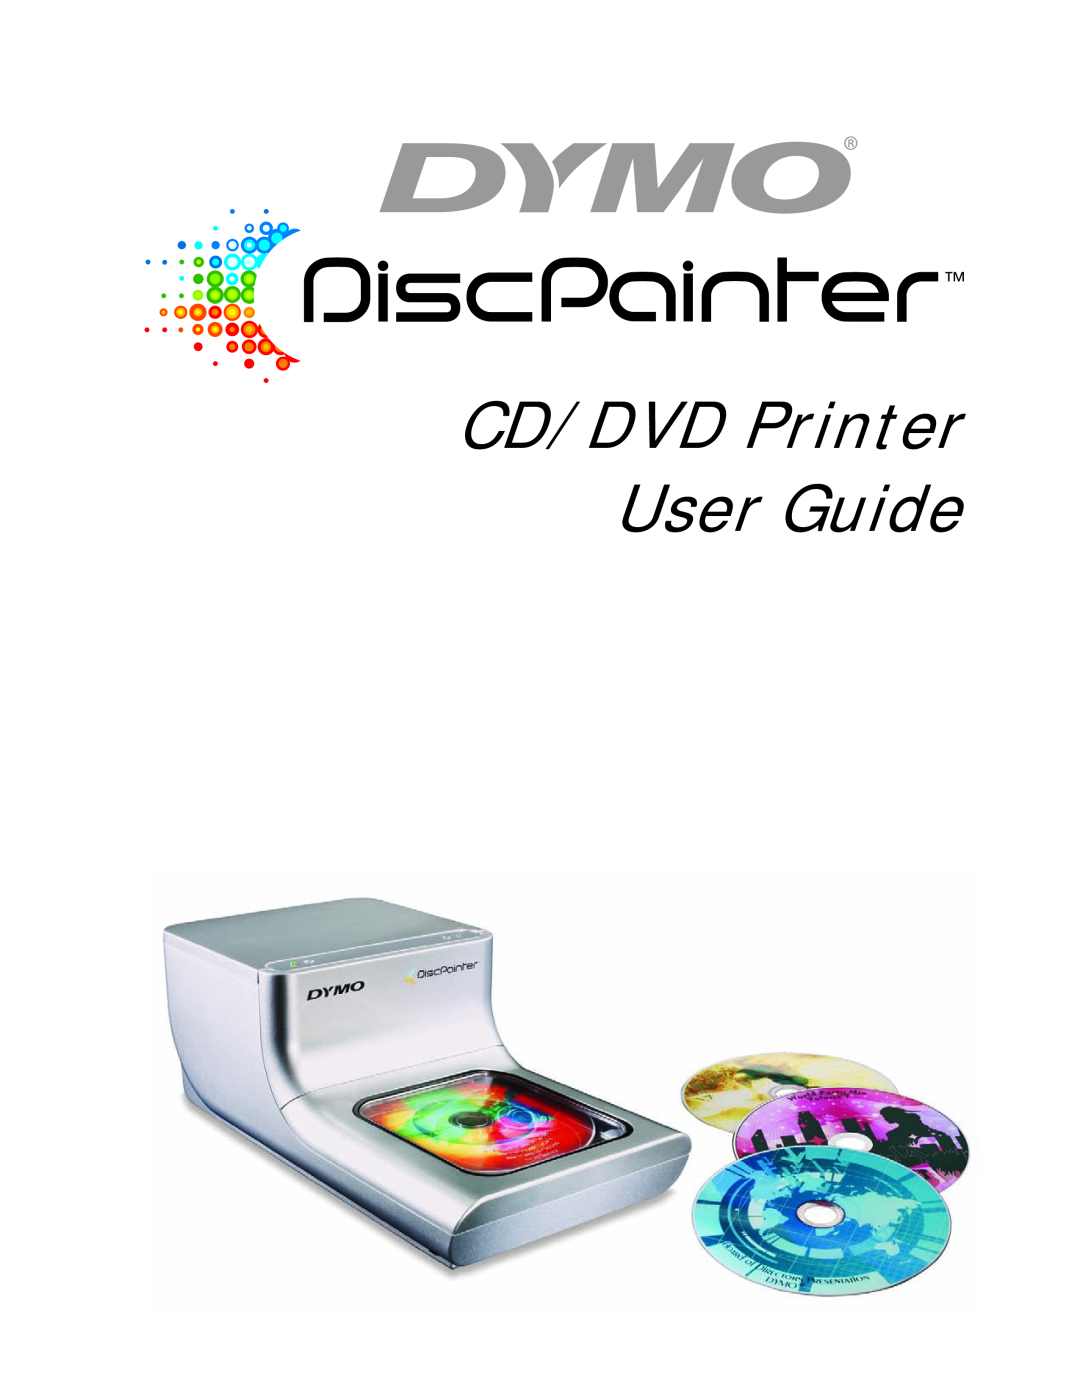 Dymo DiscPainter manual CD/DVD Printer User Guide 